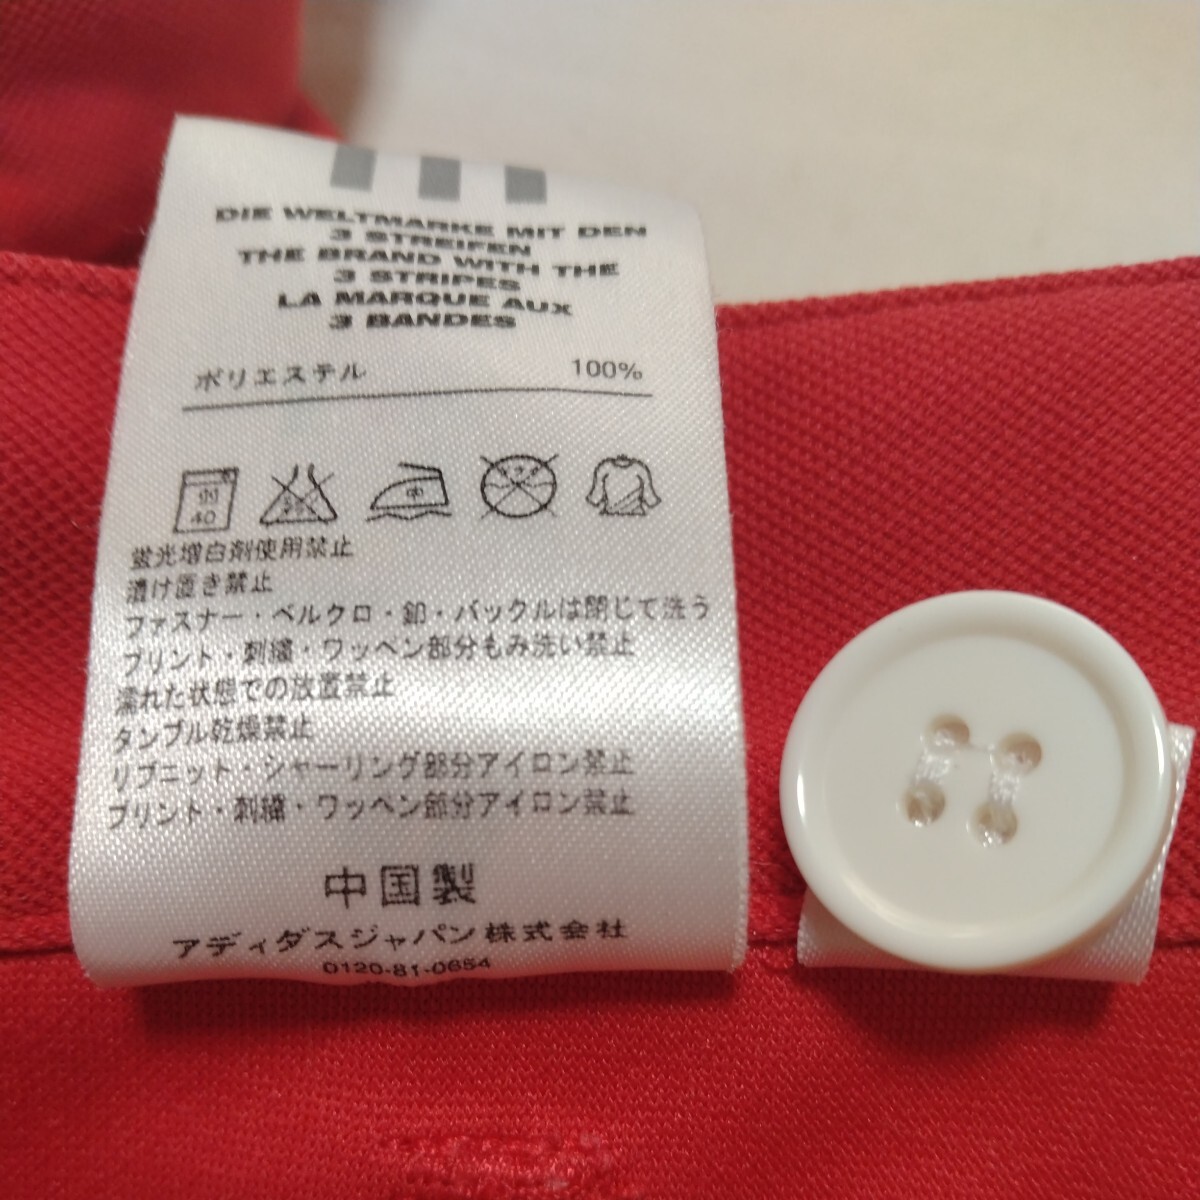  Adidas шорты красный форма сделано в Китае предварительный кнопка есть полиэстер 100% JD1018